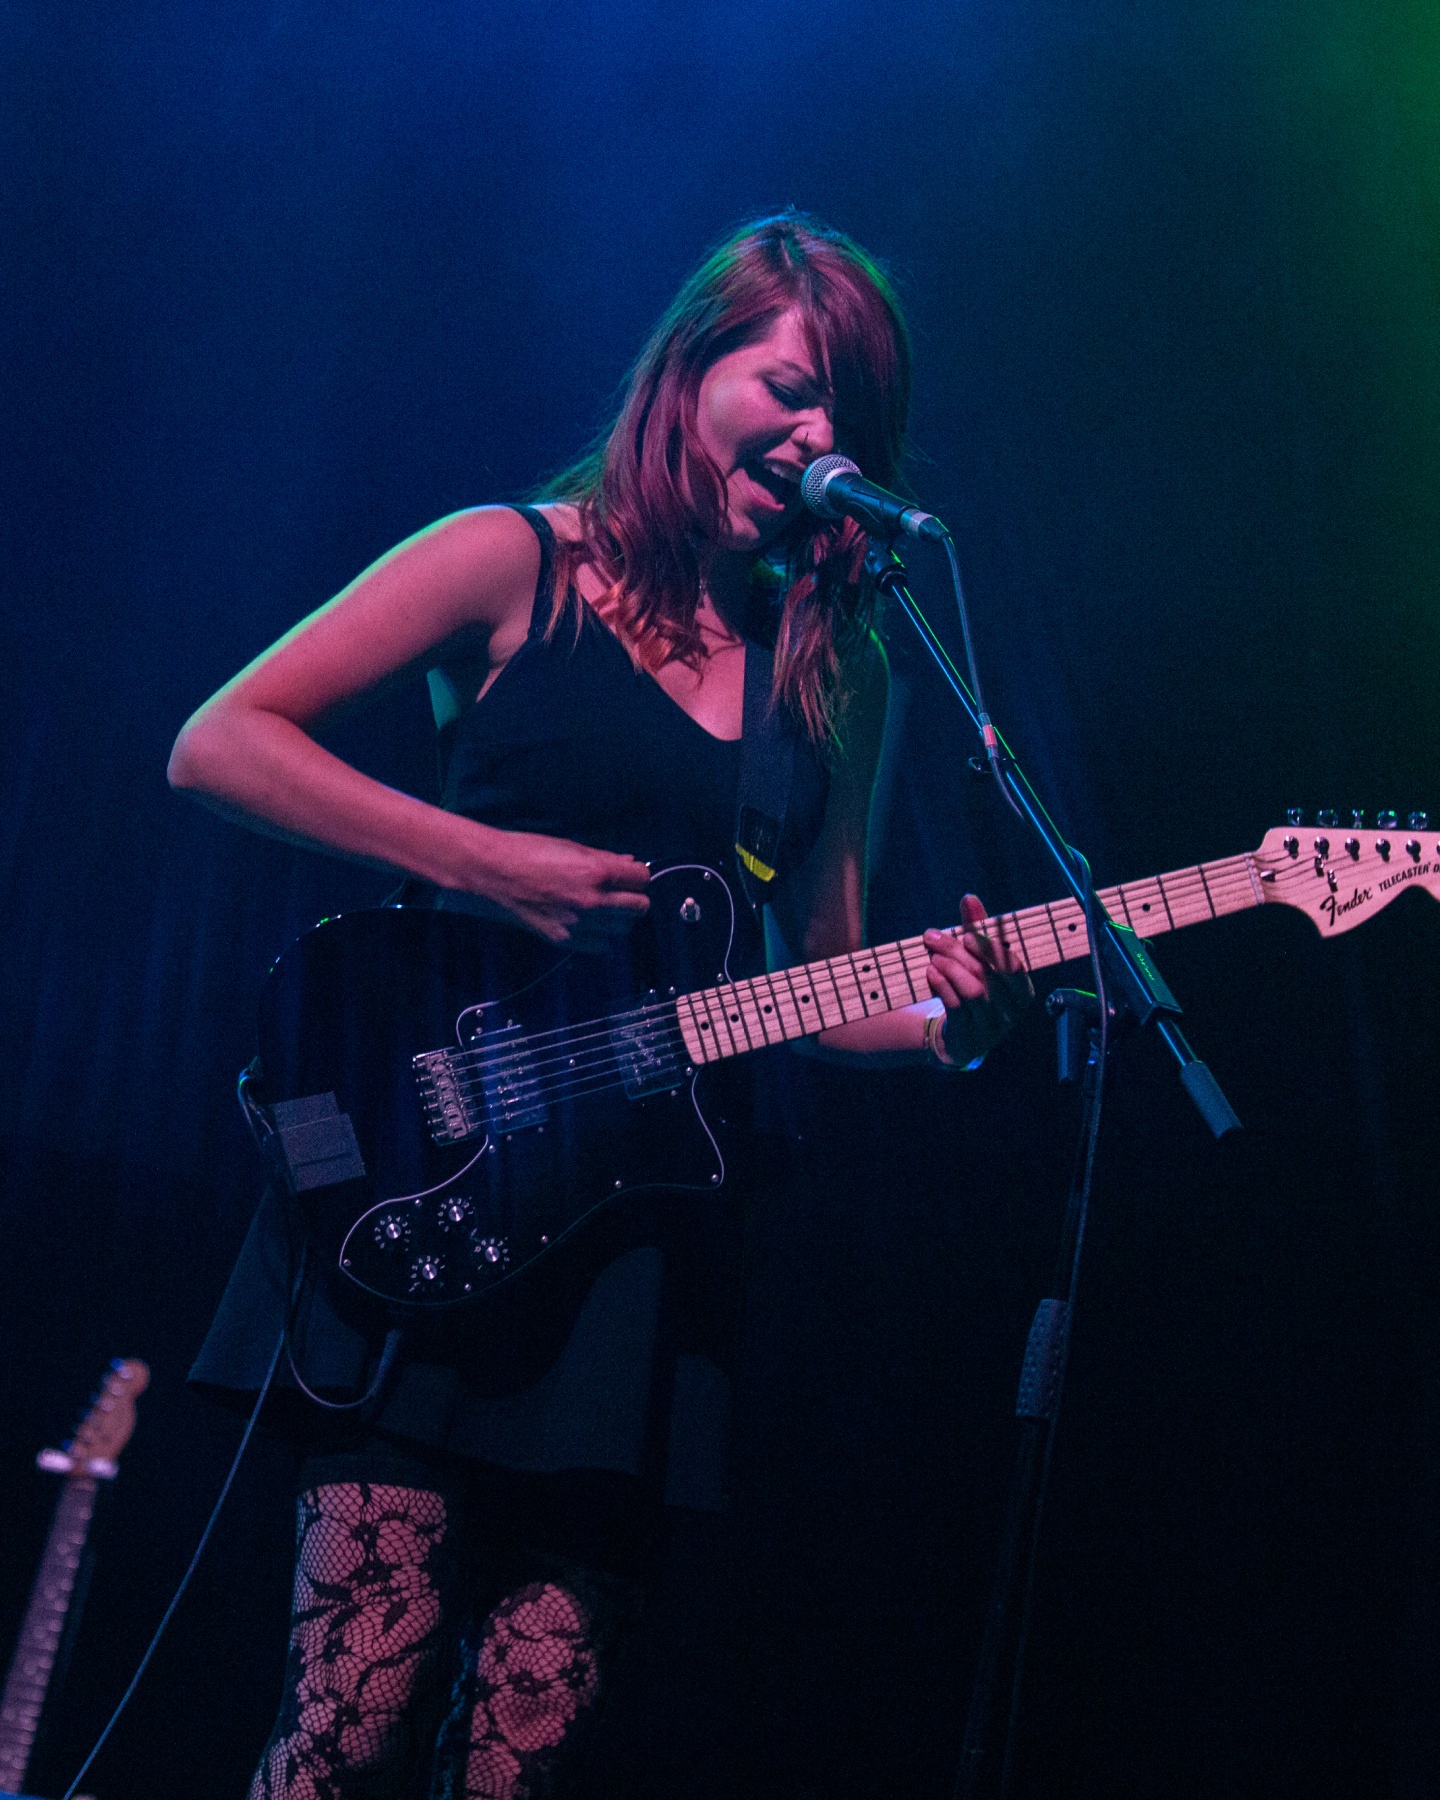 Ein Bild, das Rews mit einer Gitarre auf einer Bühne zeigt